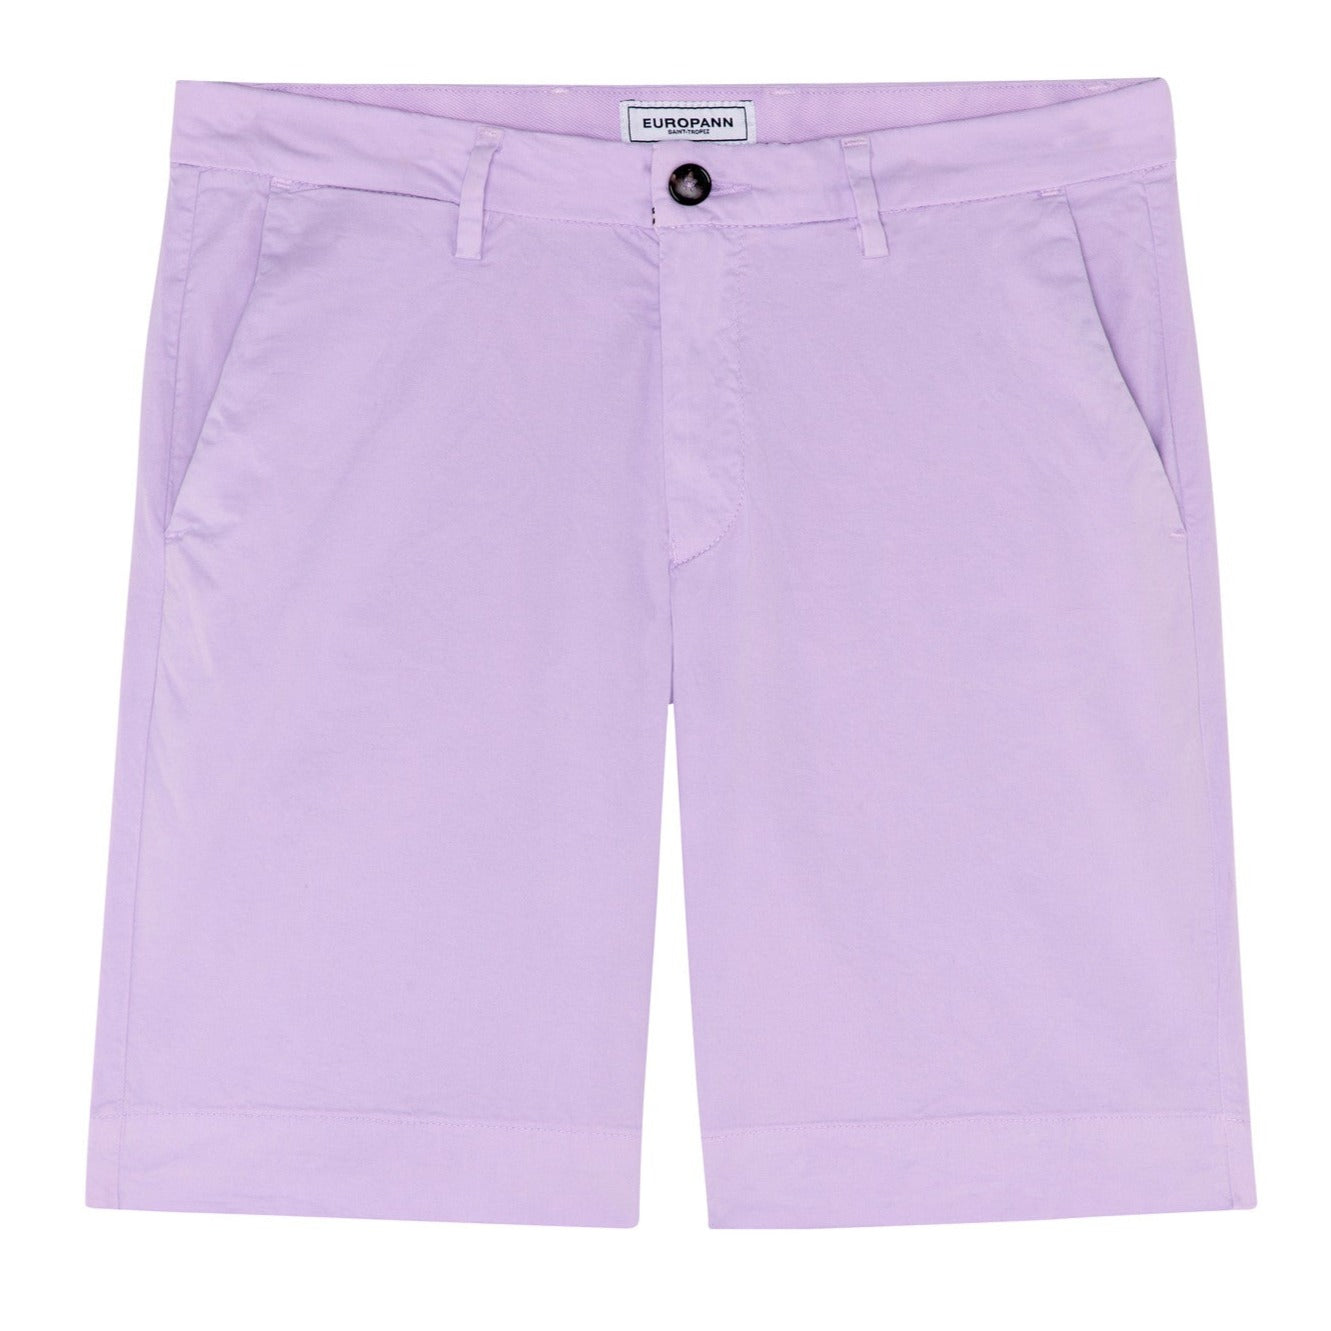 Texas Slim Bermuda Short: Lilac